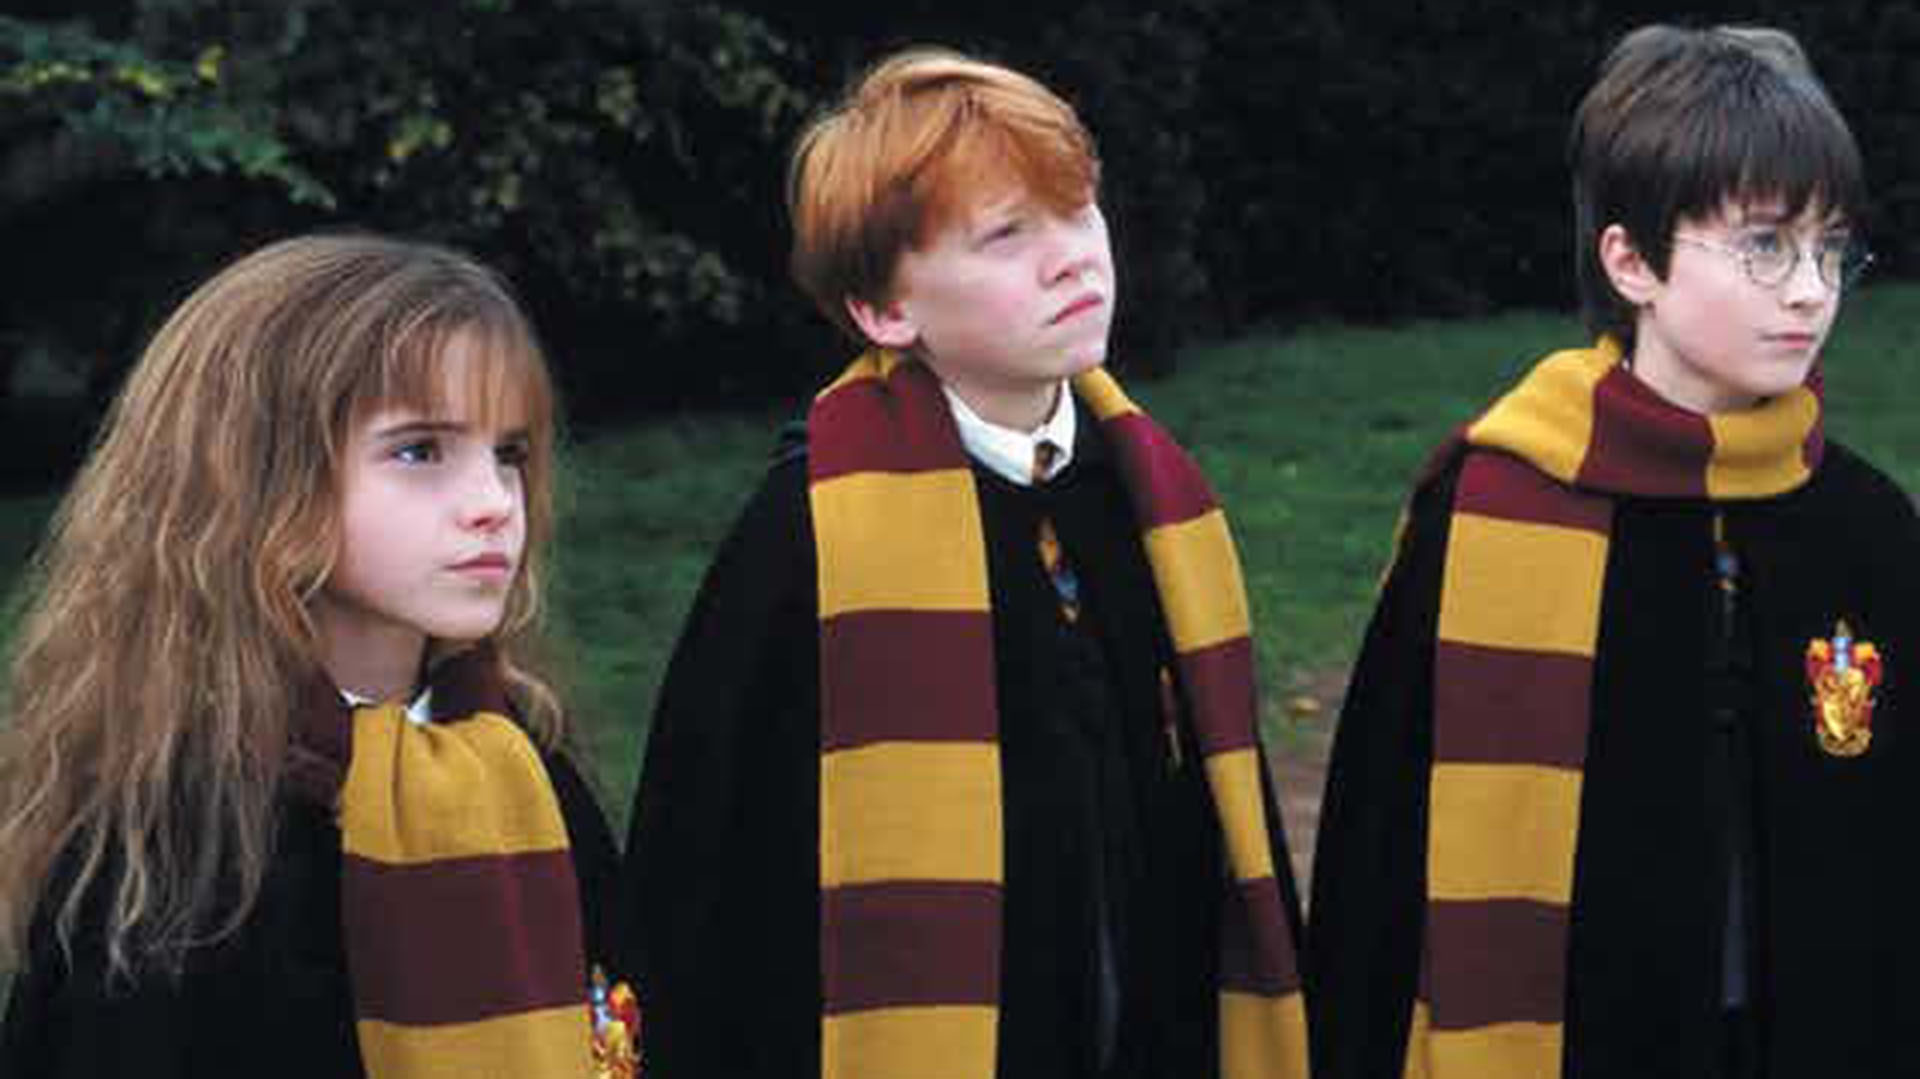 Harry Potter es la historia de un niño mago que tiene que enfrentarse a aventuras fantásticas mientras crece en un colegio de magia junto con sus amigos